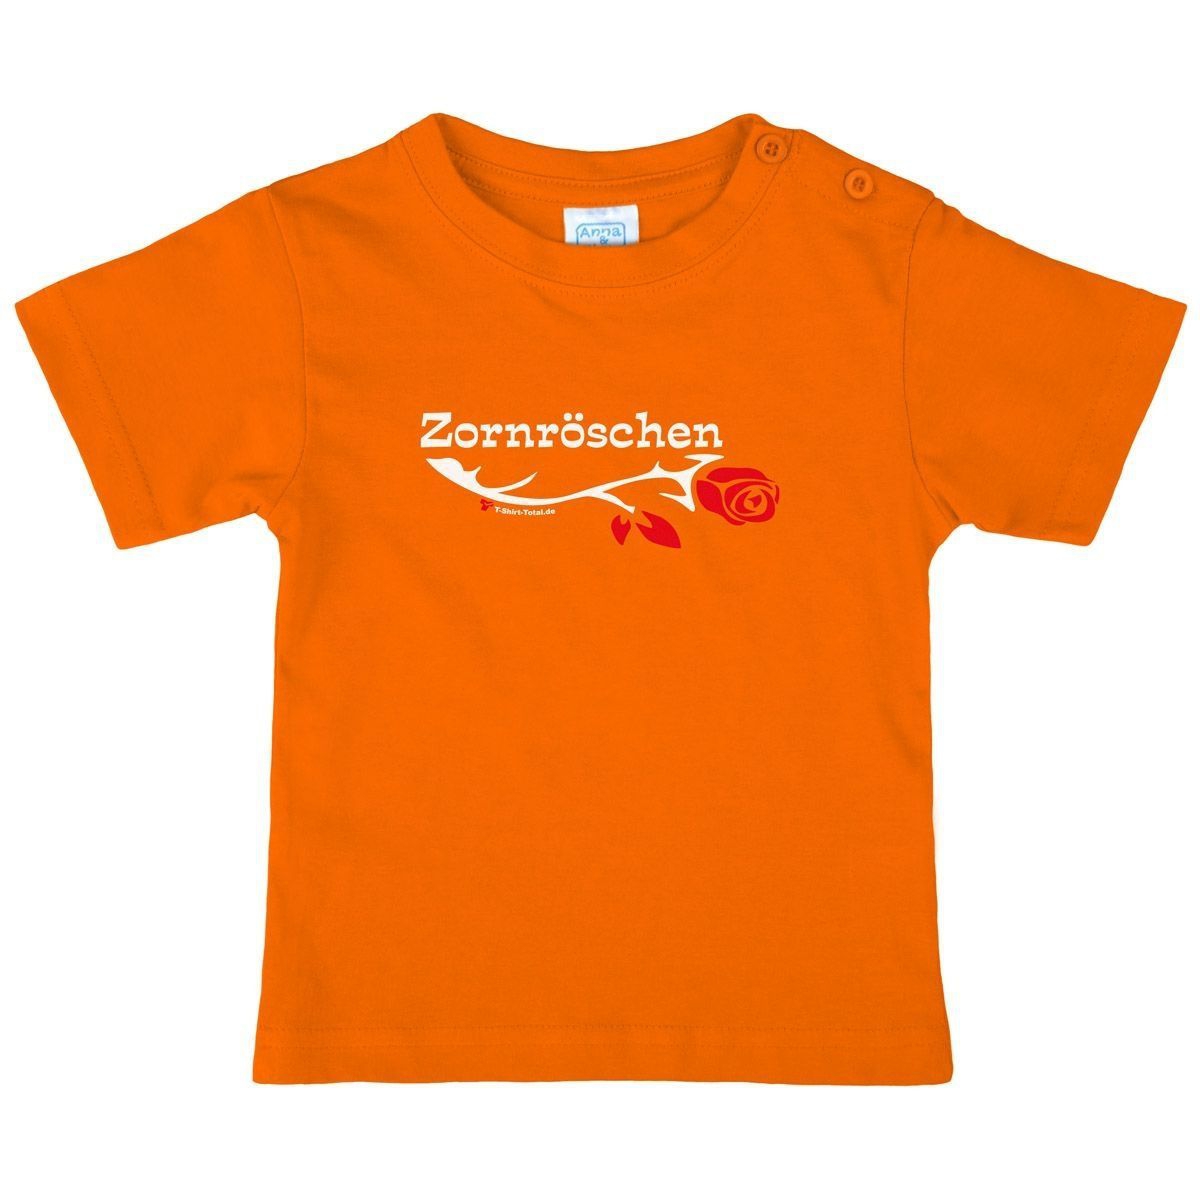 Zornröschen Kinder T-Shirt orange 80 / 86